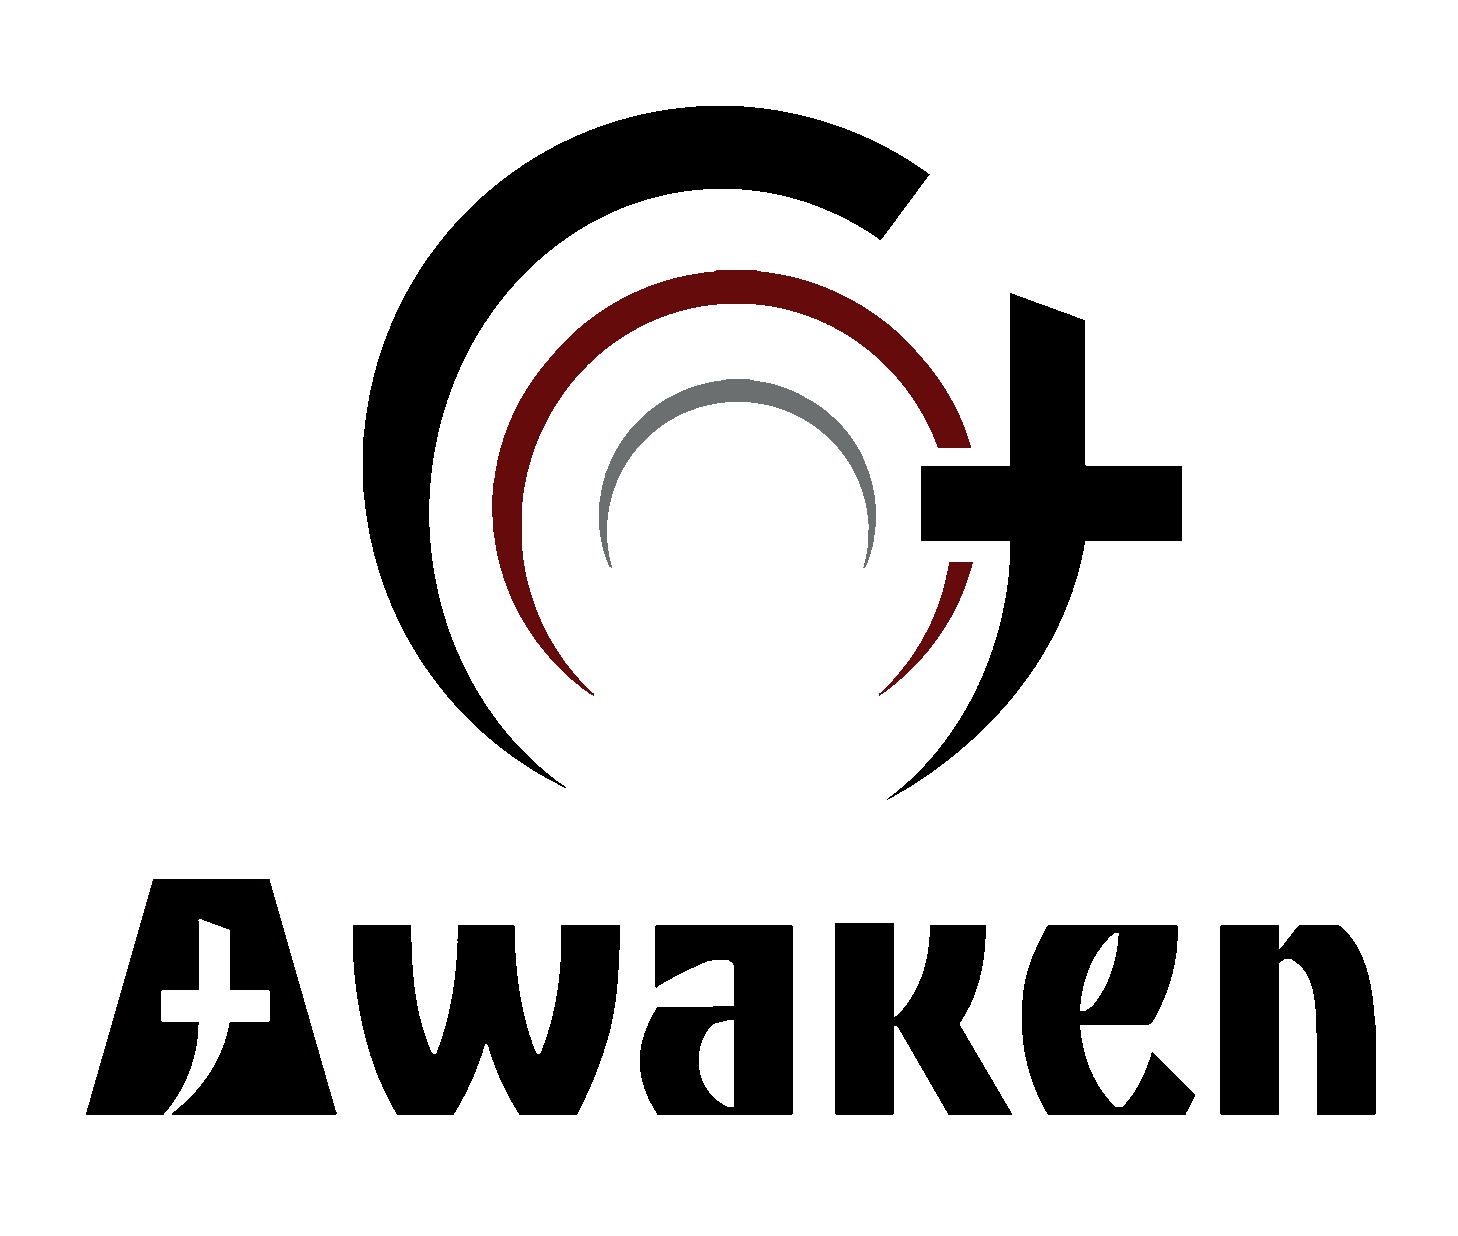 Awaken